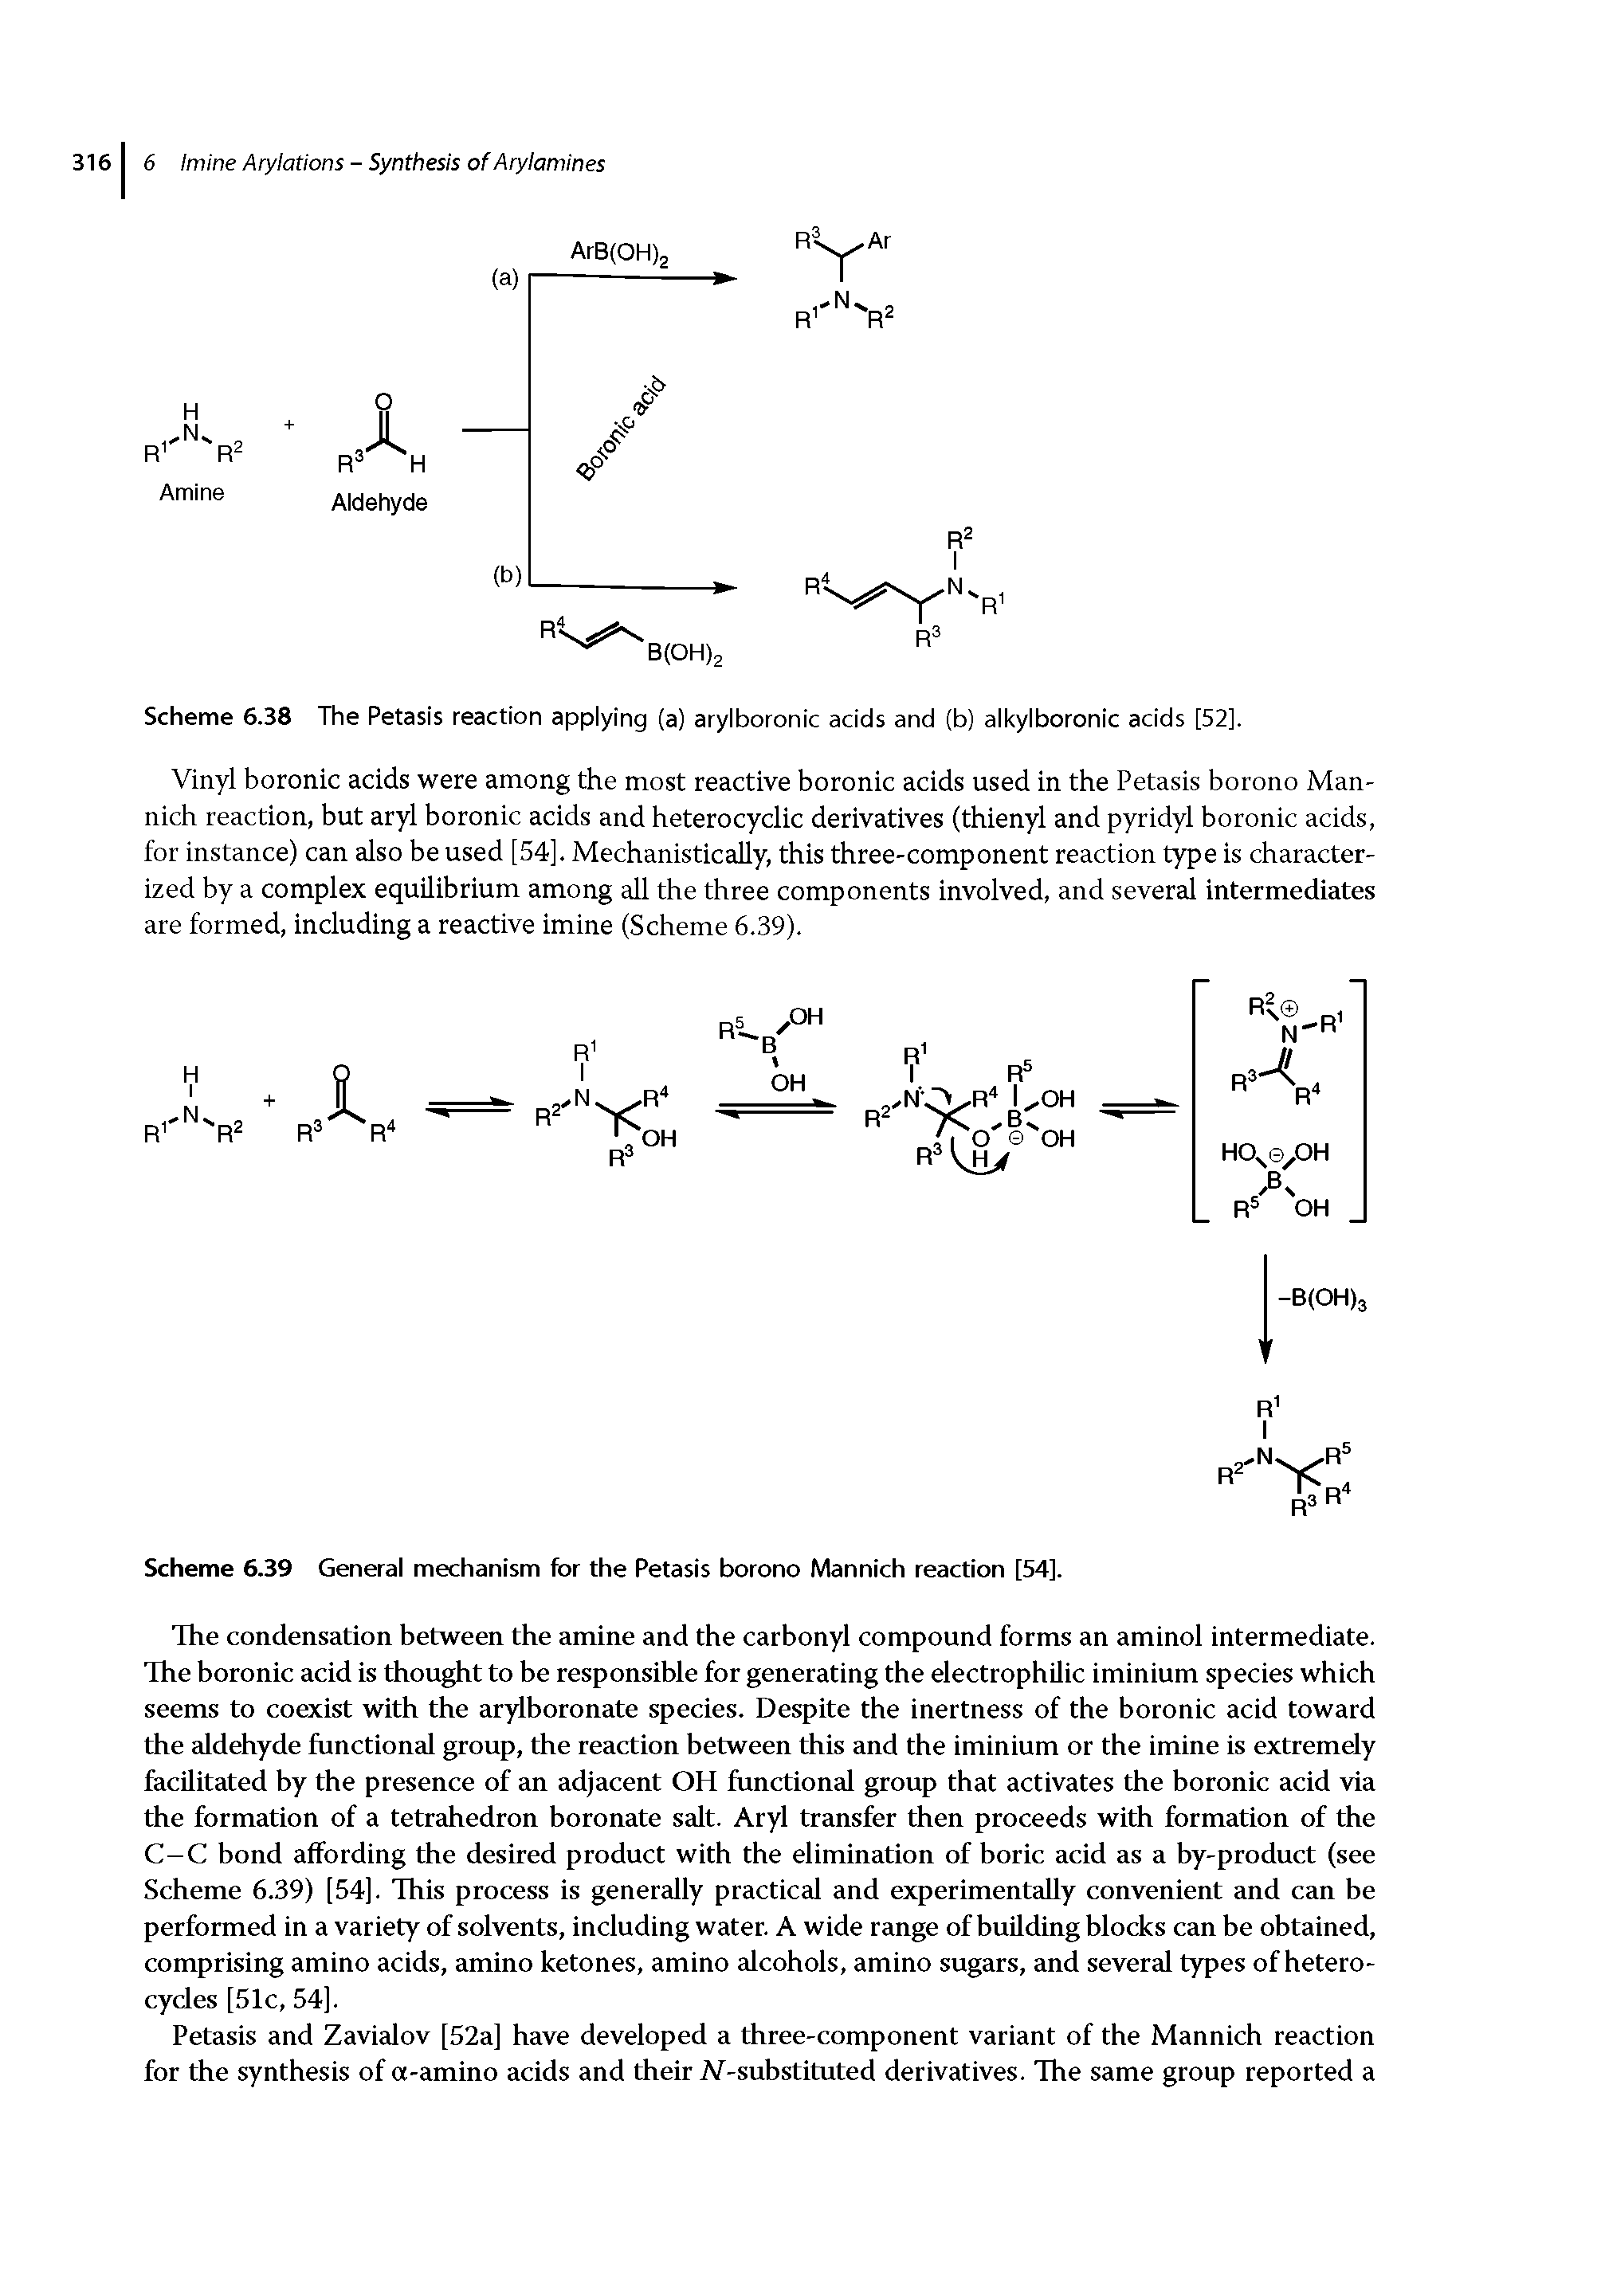 Scheme 6.39 General mechanism for the Petasis borono Mannich reaction [54].